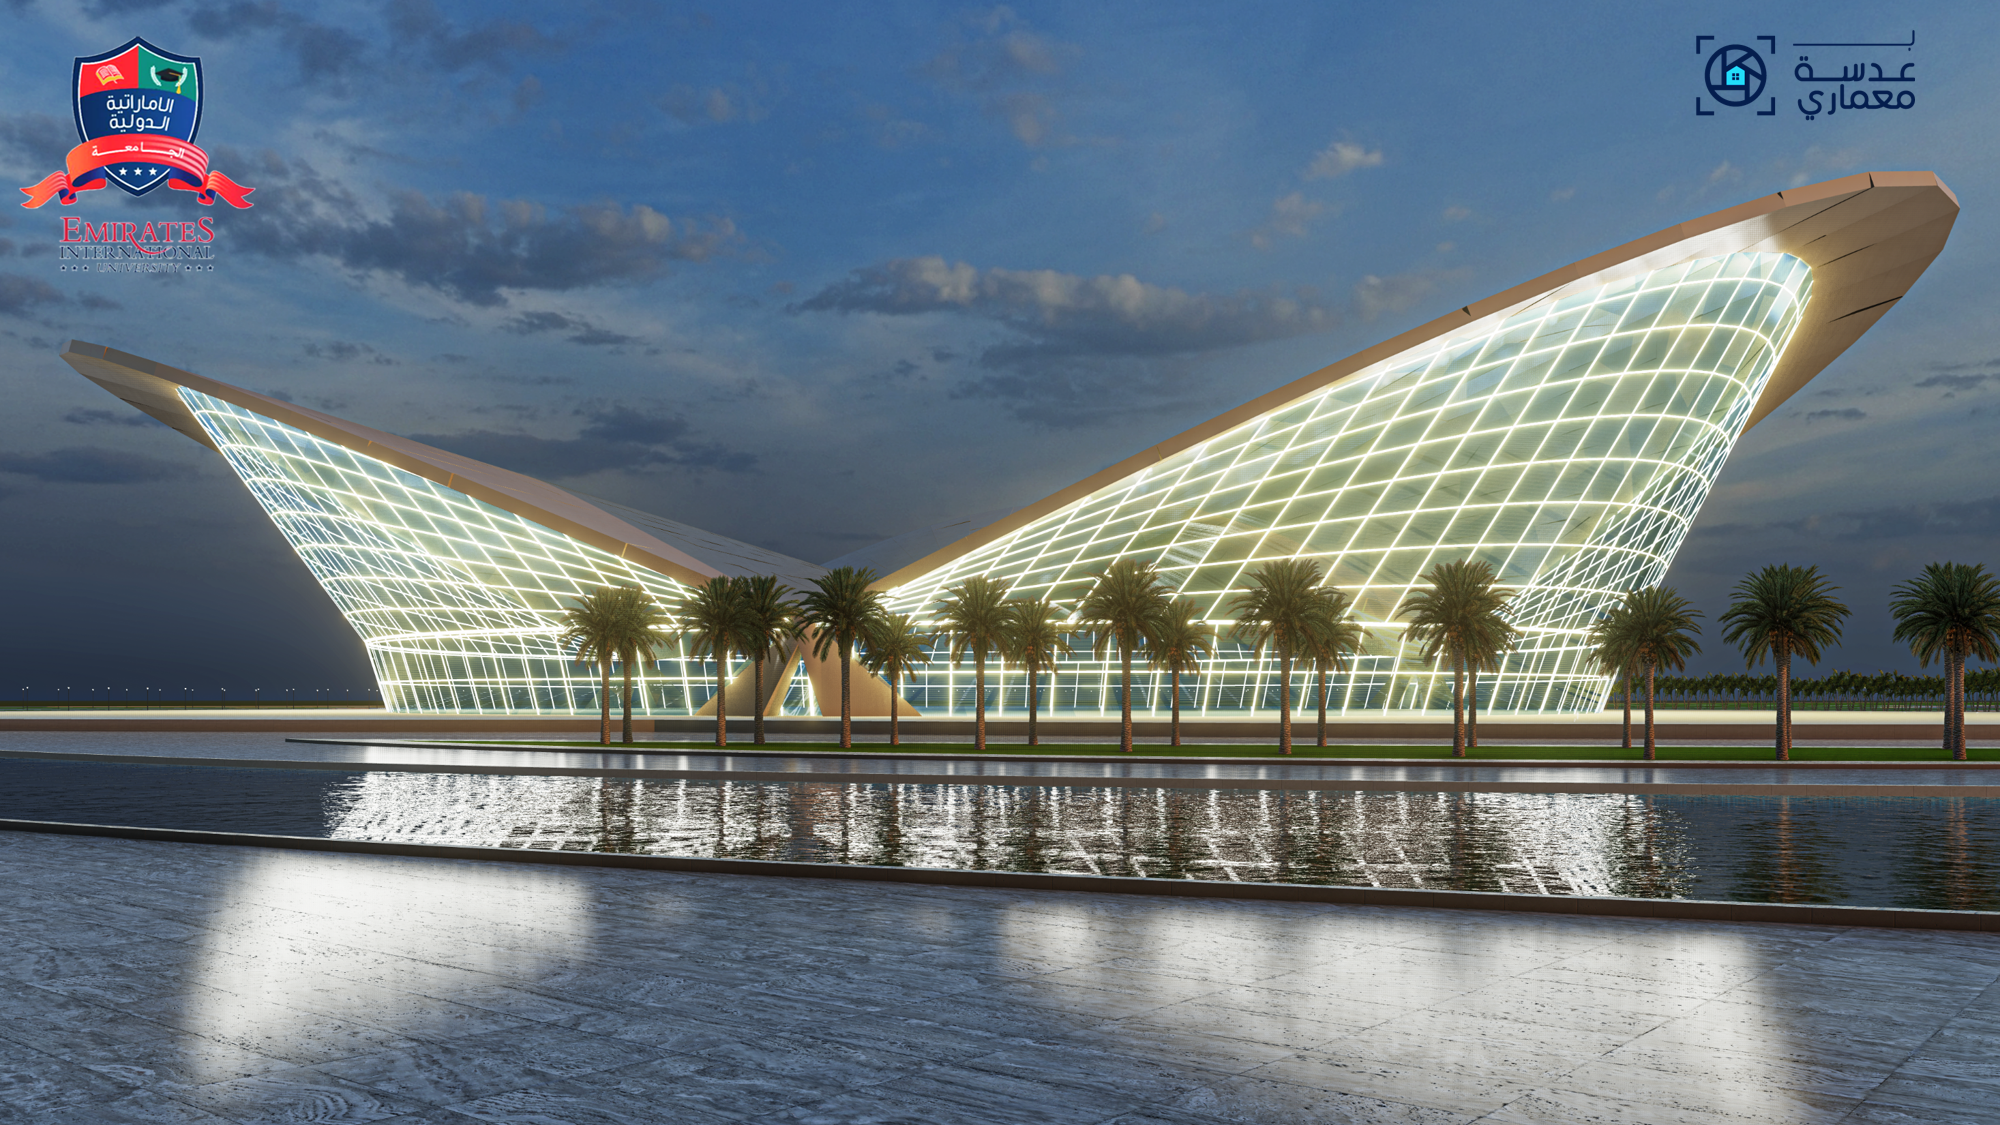 مشروع تصميم مطار صنعاء الدولي -مشروع تخرج 2020 حاصل على درجة الإمتياز-الجامعة الإماراتية الدولية-اليمن
-واجهات مبنى المطار-إعداد /مهندس غسان حمود قيس